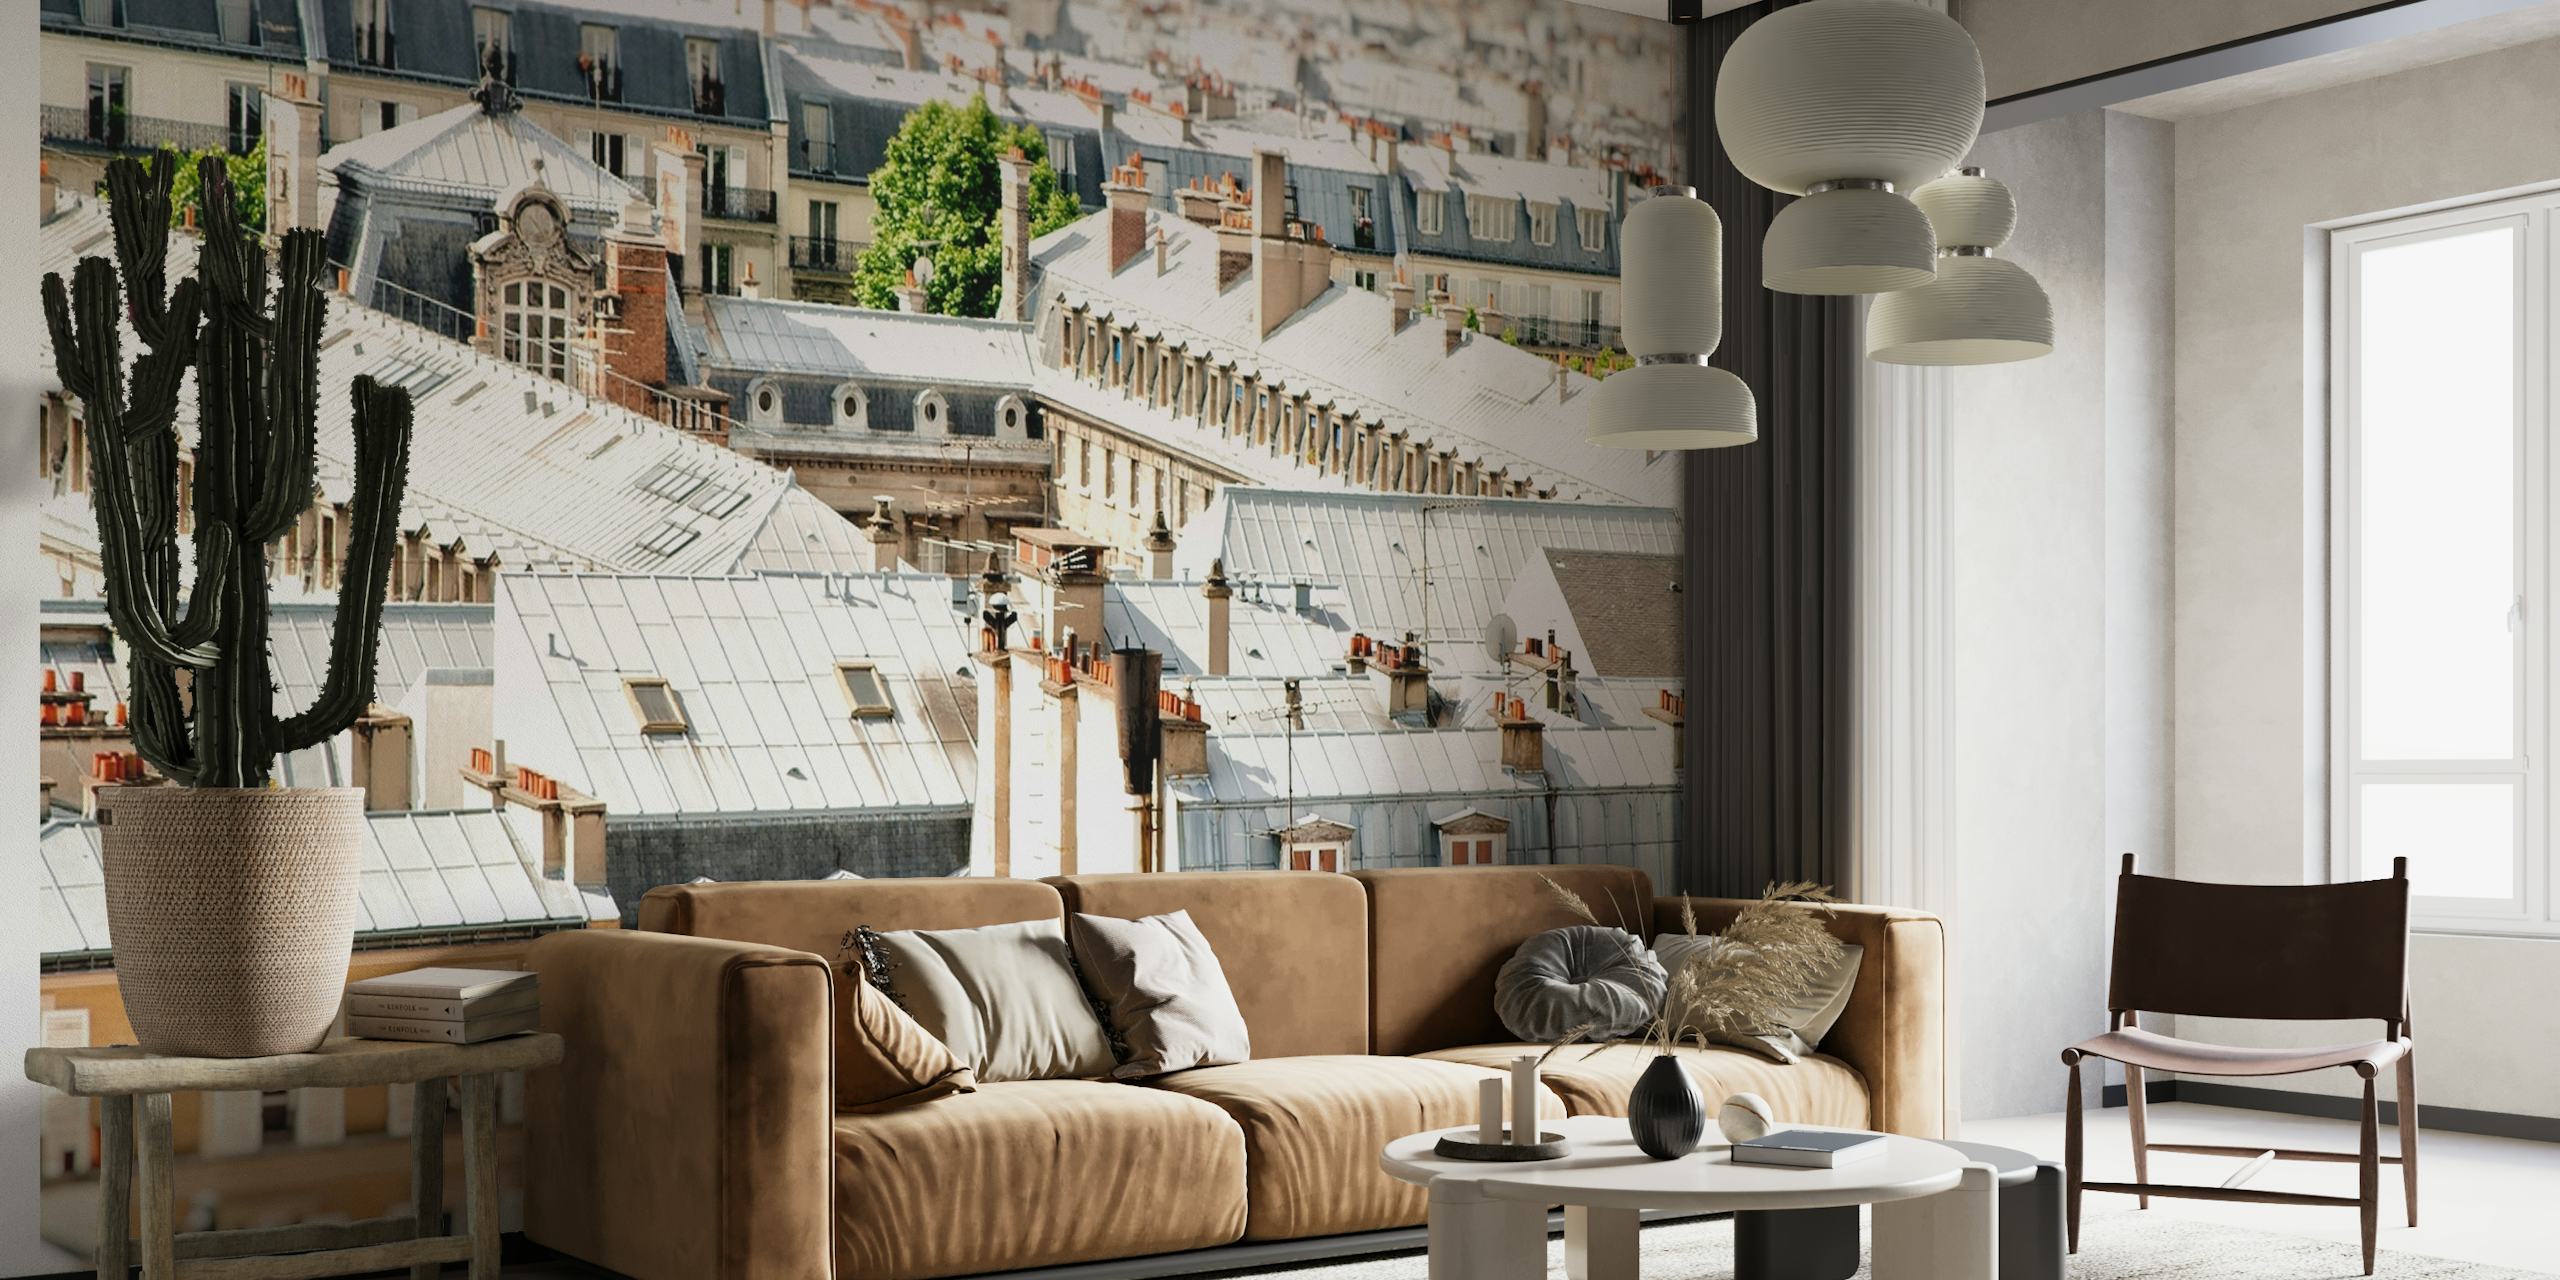 Malebná nástěnná malba Scenic Paris Rooftops s okouzlující architekturou pařížských budov při pohledu shora.